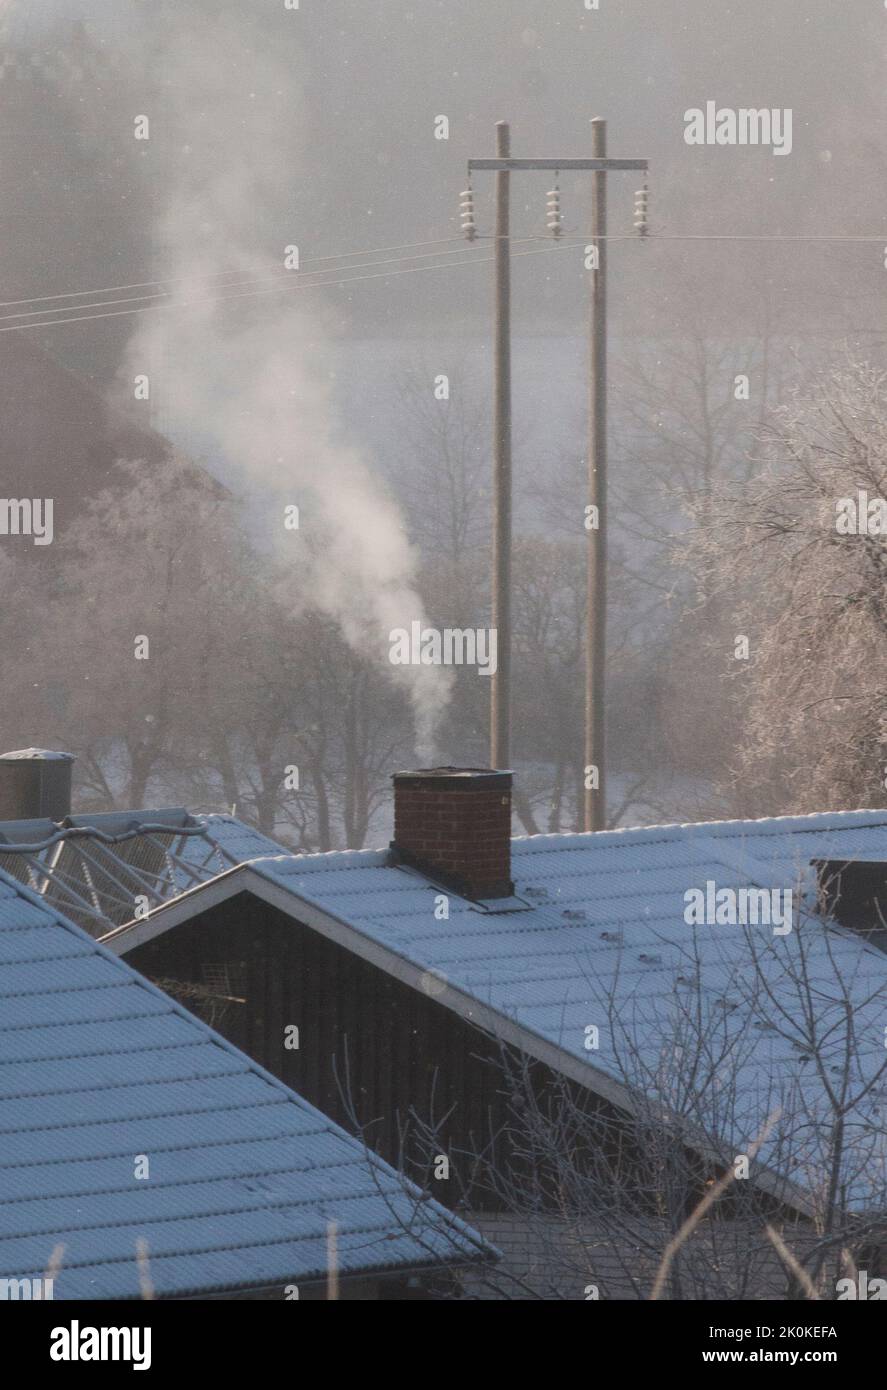 HUMO de la chimenea en un día de invierno Foto de stock